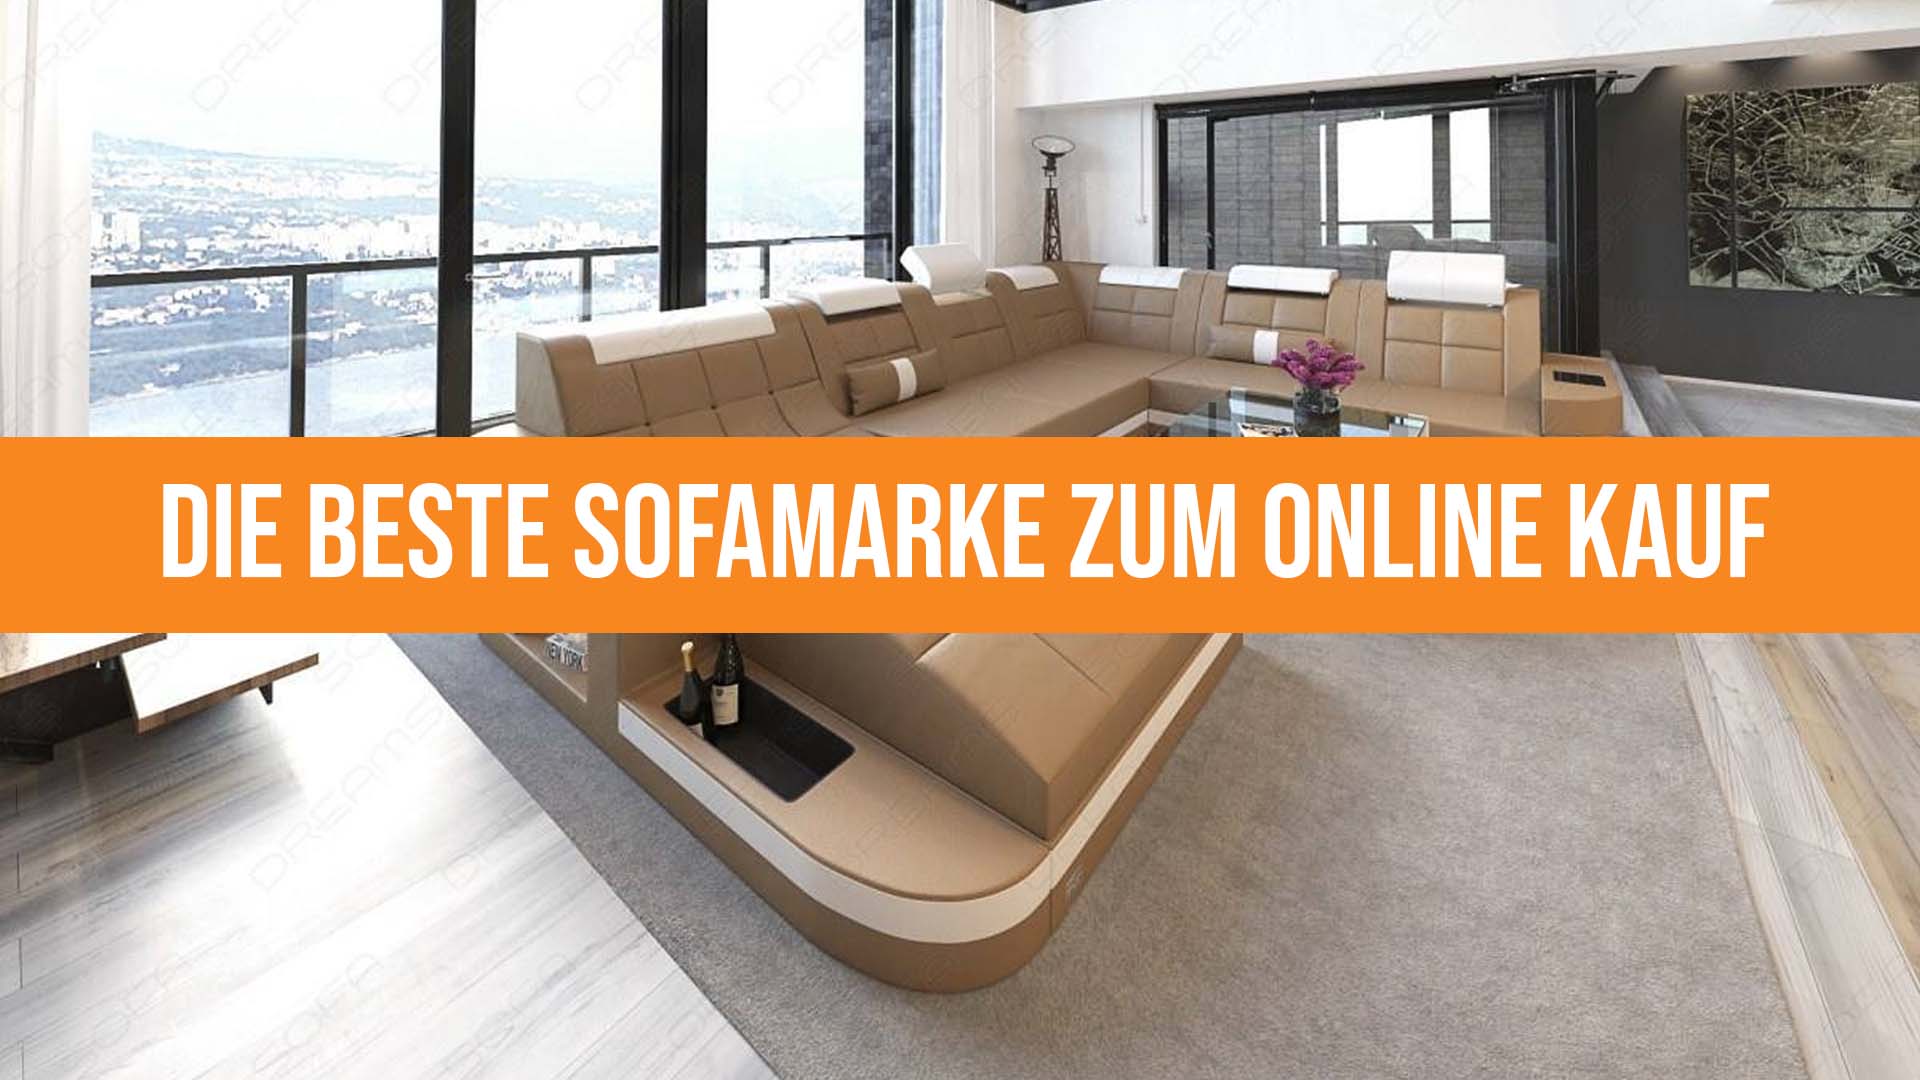 Die beste Sofamarke zum Online Kauf